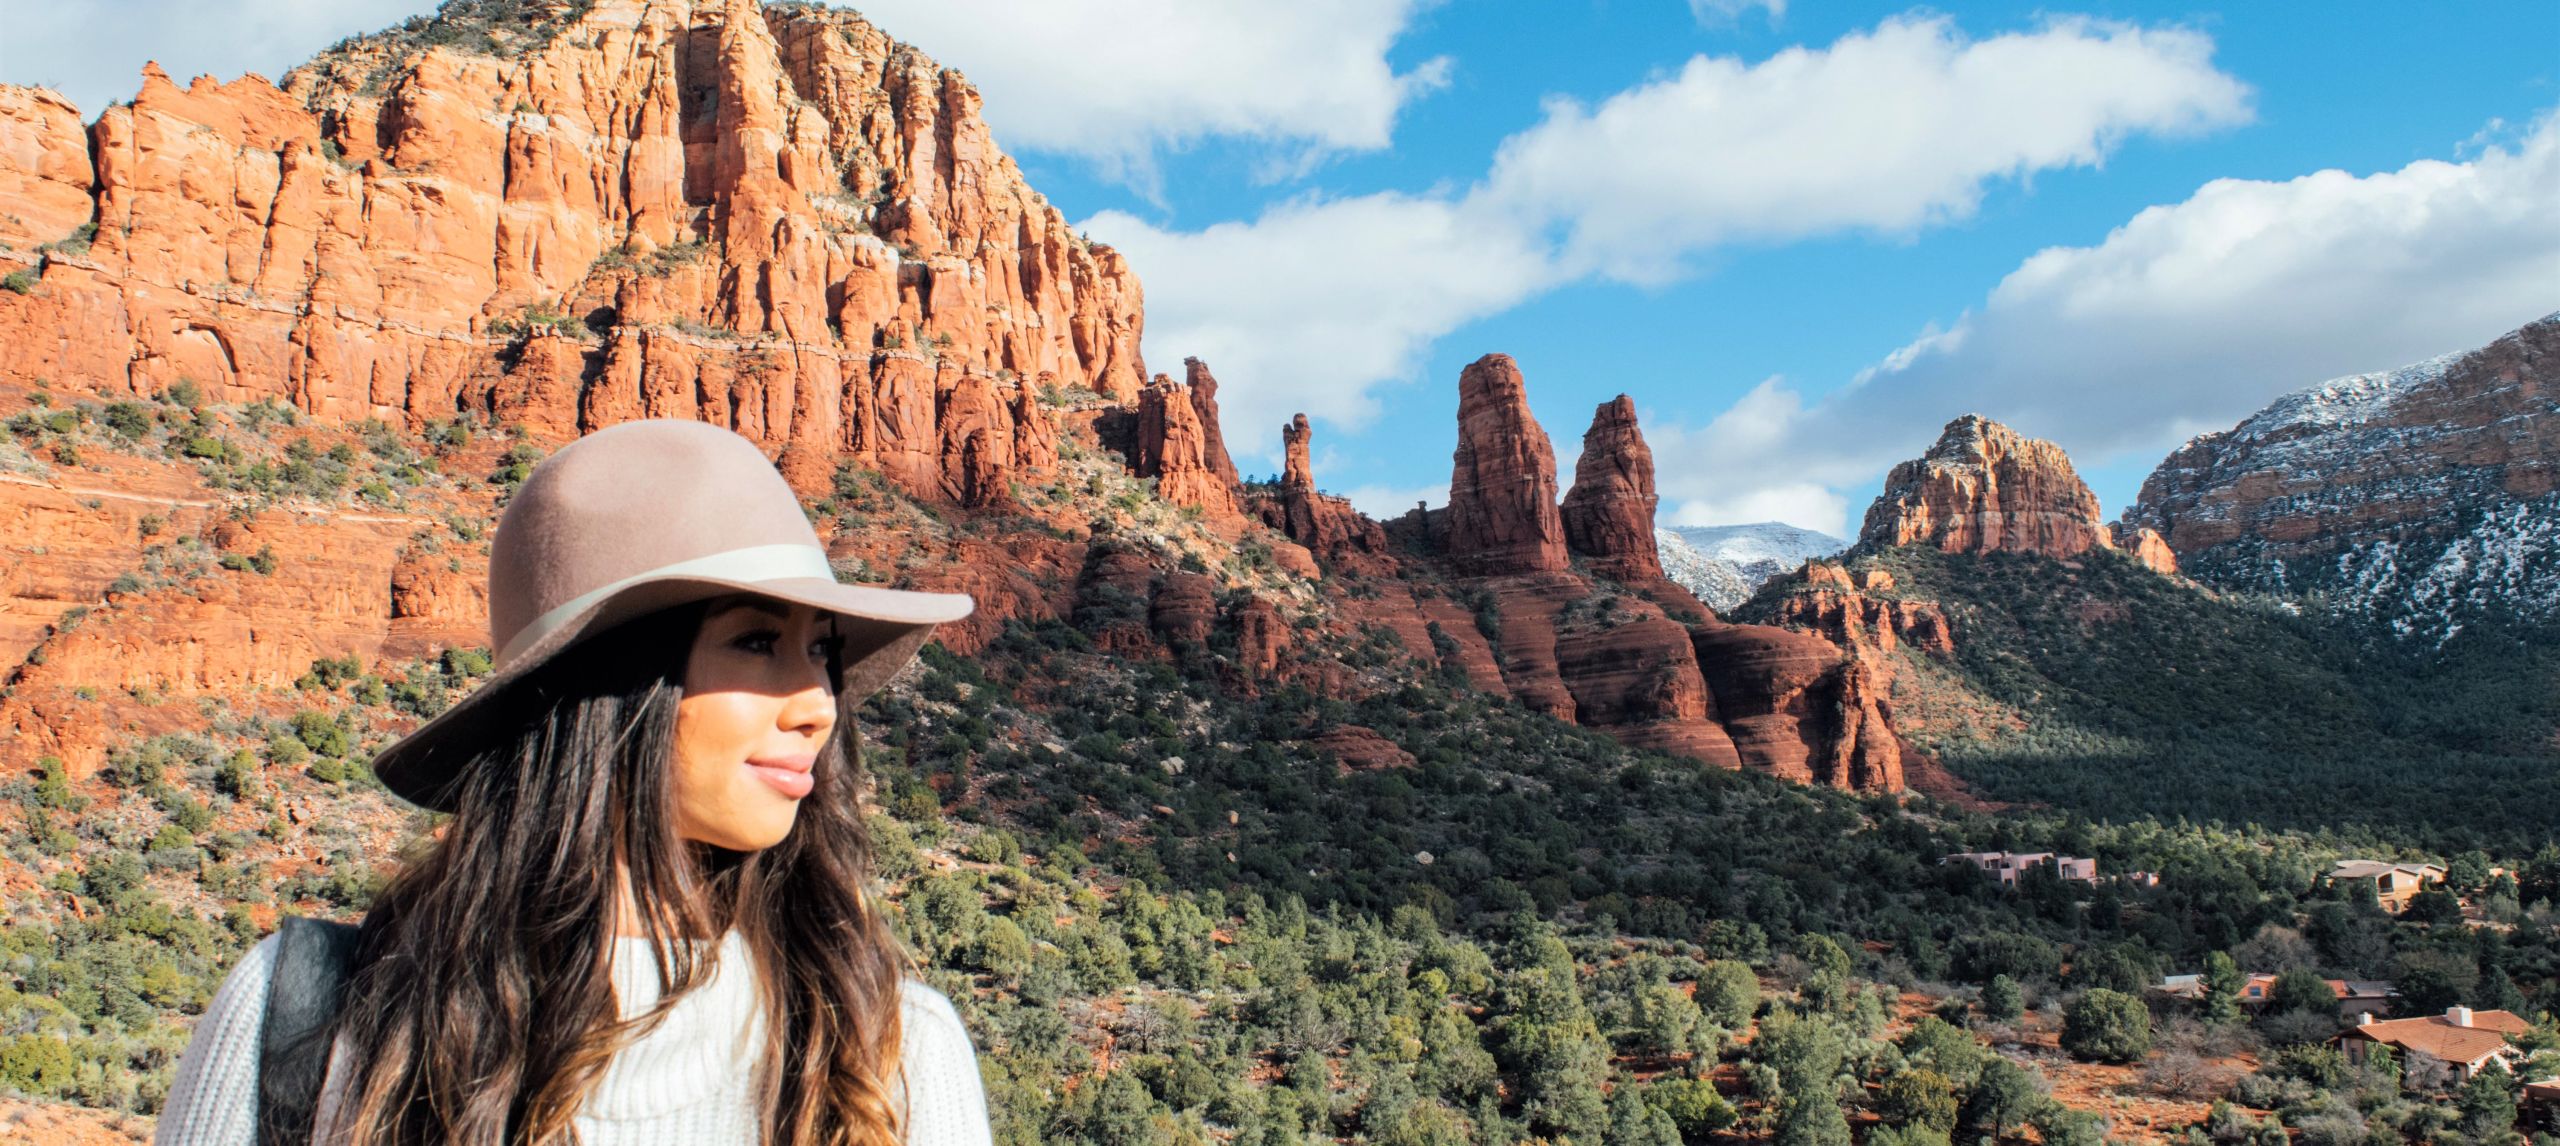 Mujer con paisaje de montañas de rocas rojas detrás de ella